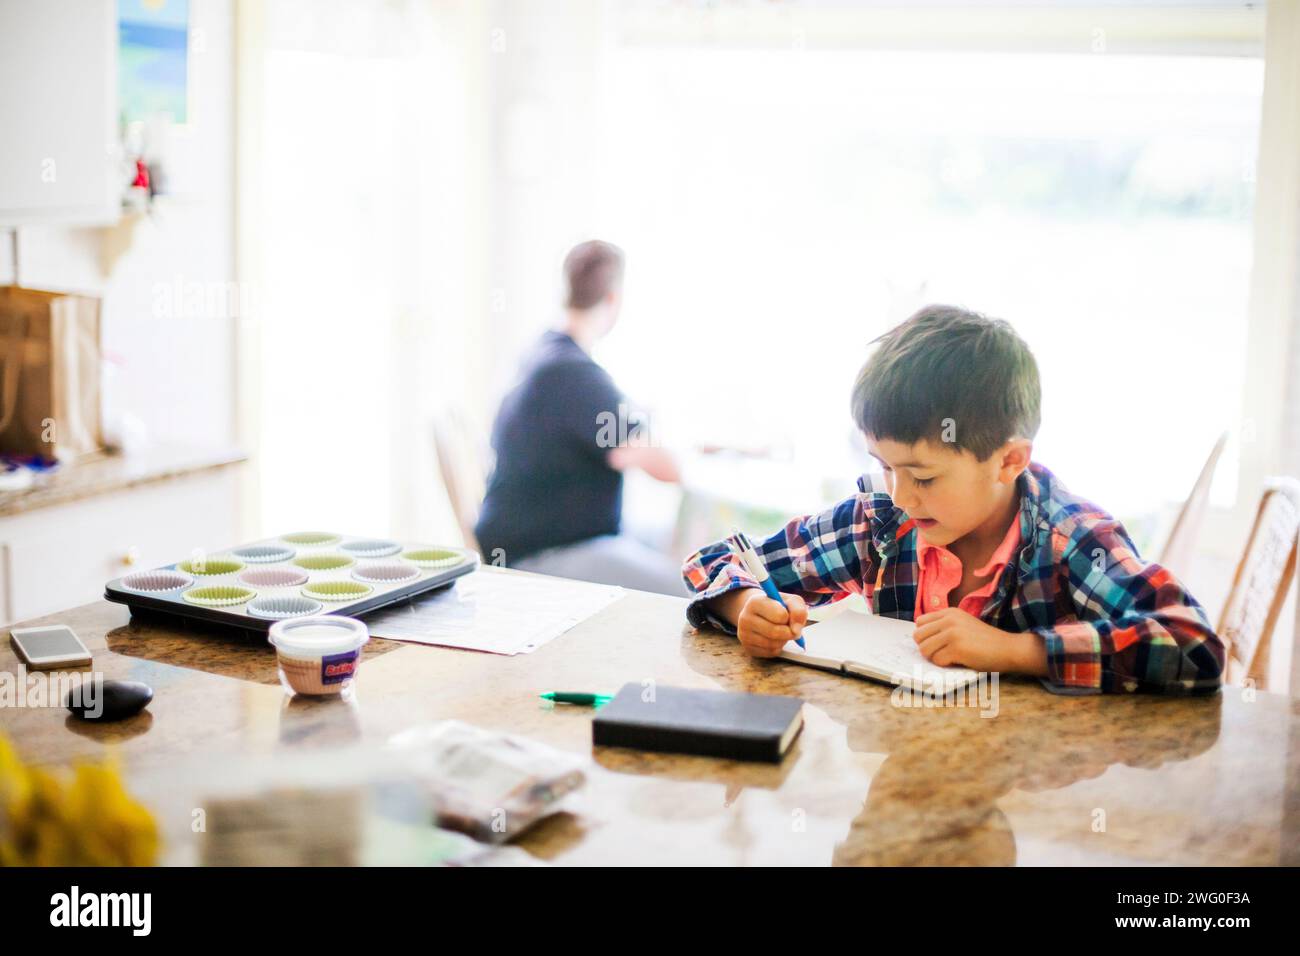 Un ragazzo giapponese di 6 anni scrive nel suo diario al bancone della cucina. Un uomo è sagomato dietro di lui seduto in un angolo della cucina. Foto Stock